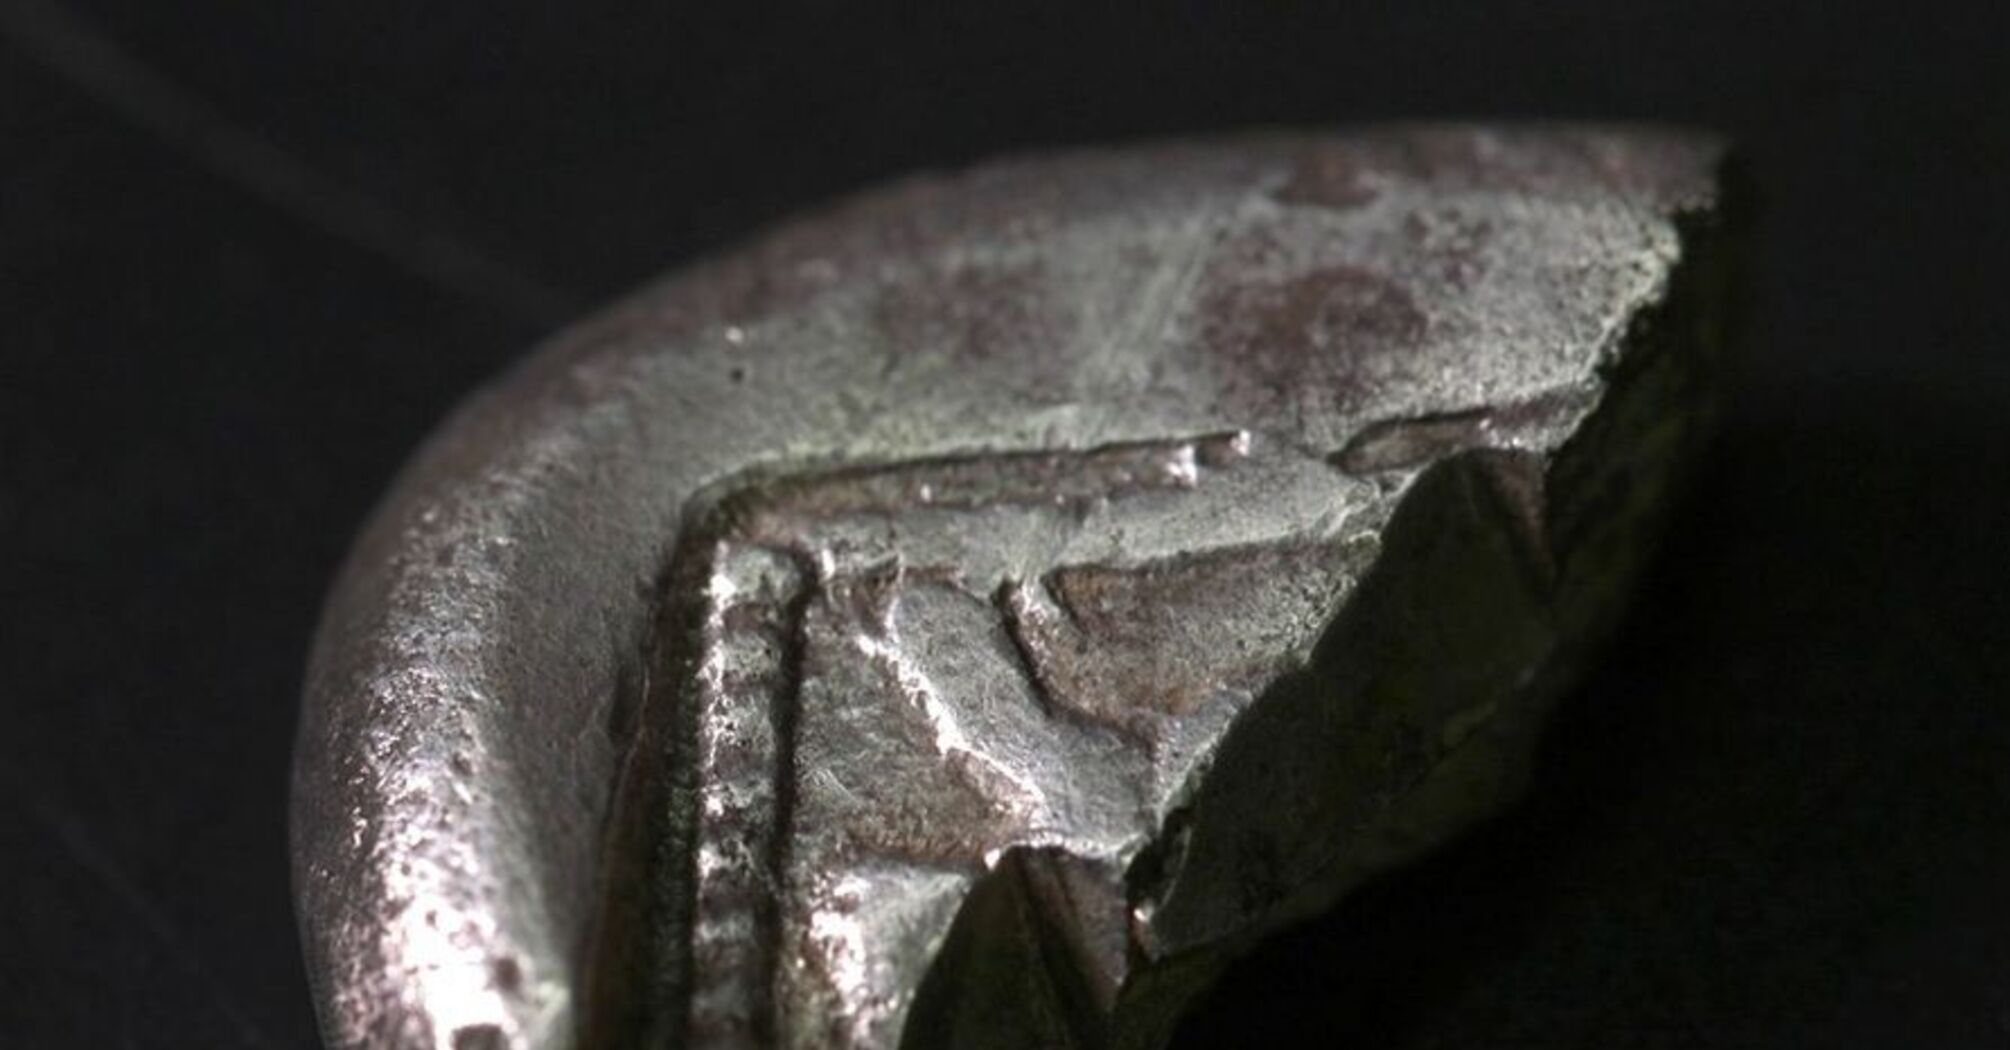 Rzadka srebrna moneta sprzed 2500 lat znaleziona w pobliżu Jerozolimy (zdjęcie)